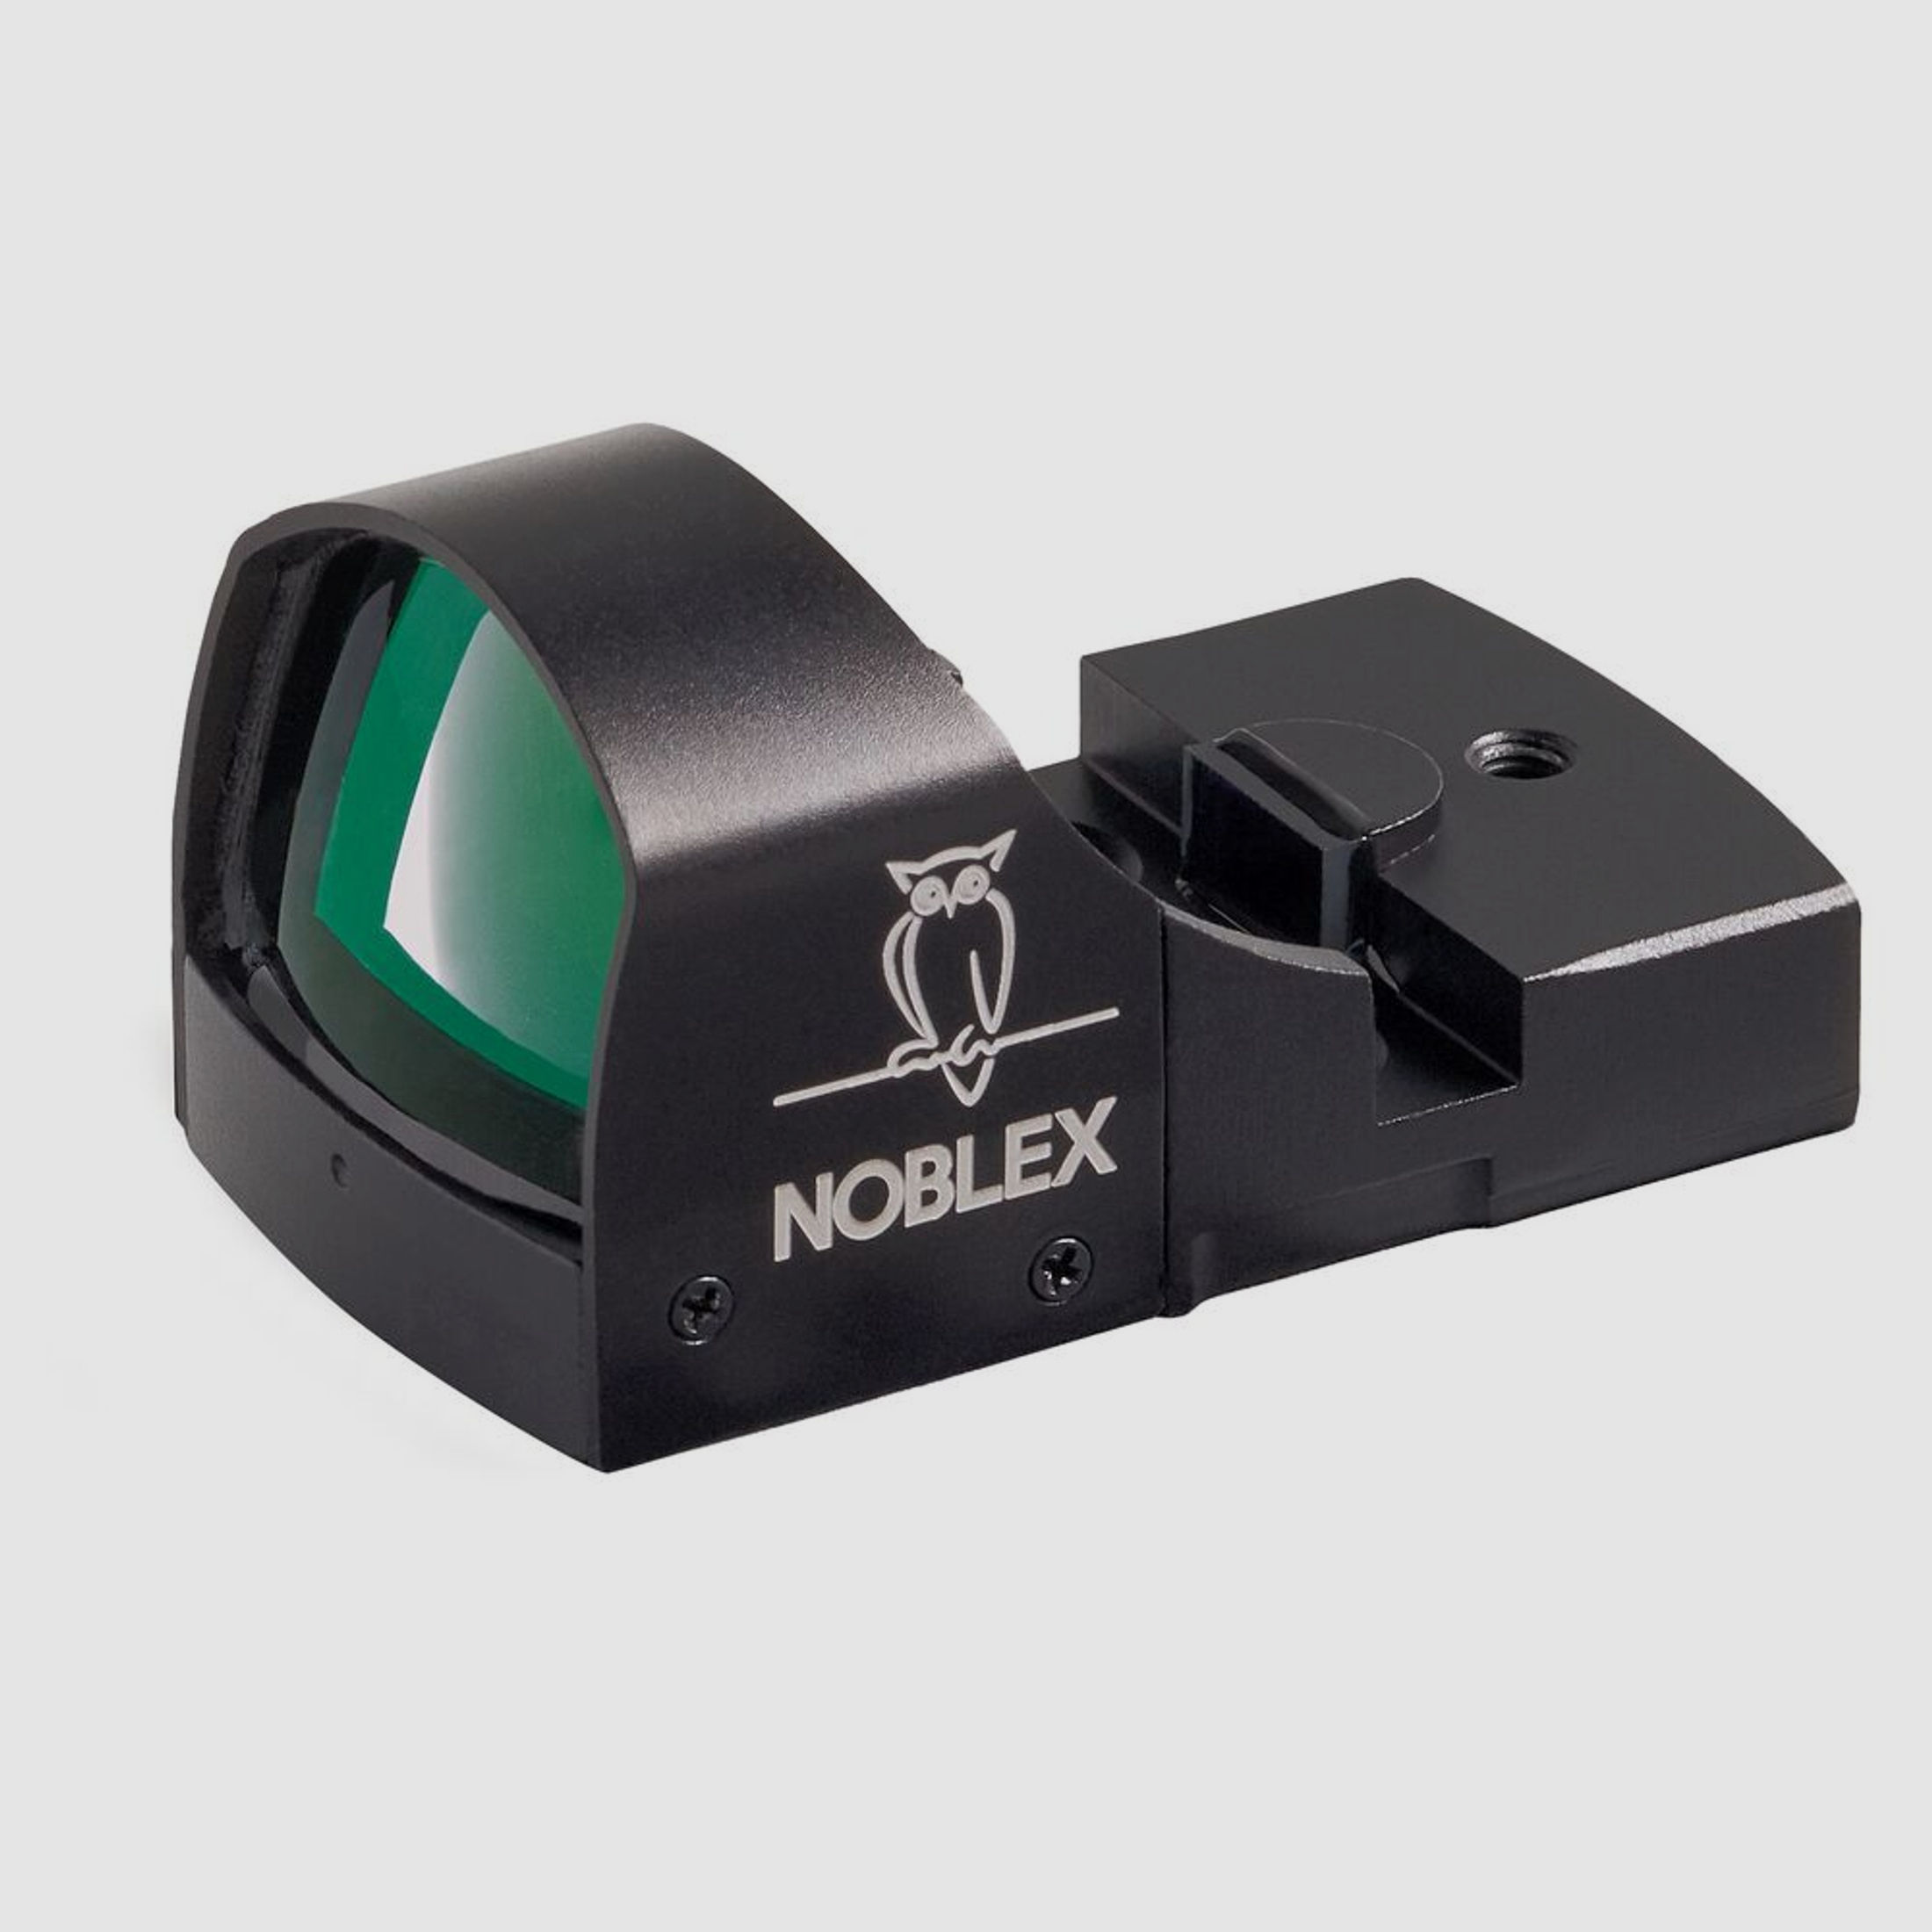 Noblex NV sight II Plus LAW Enforcement – 7,0 MOA